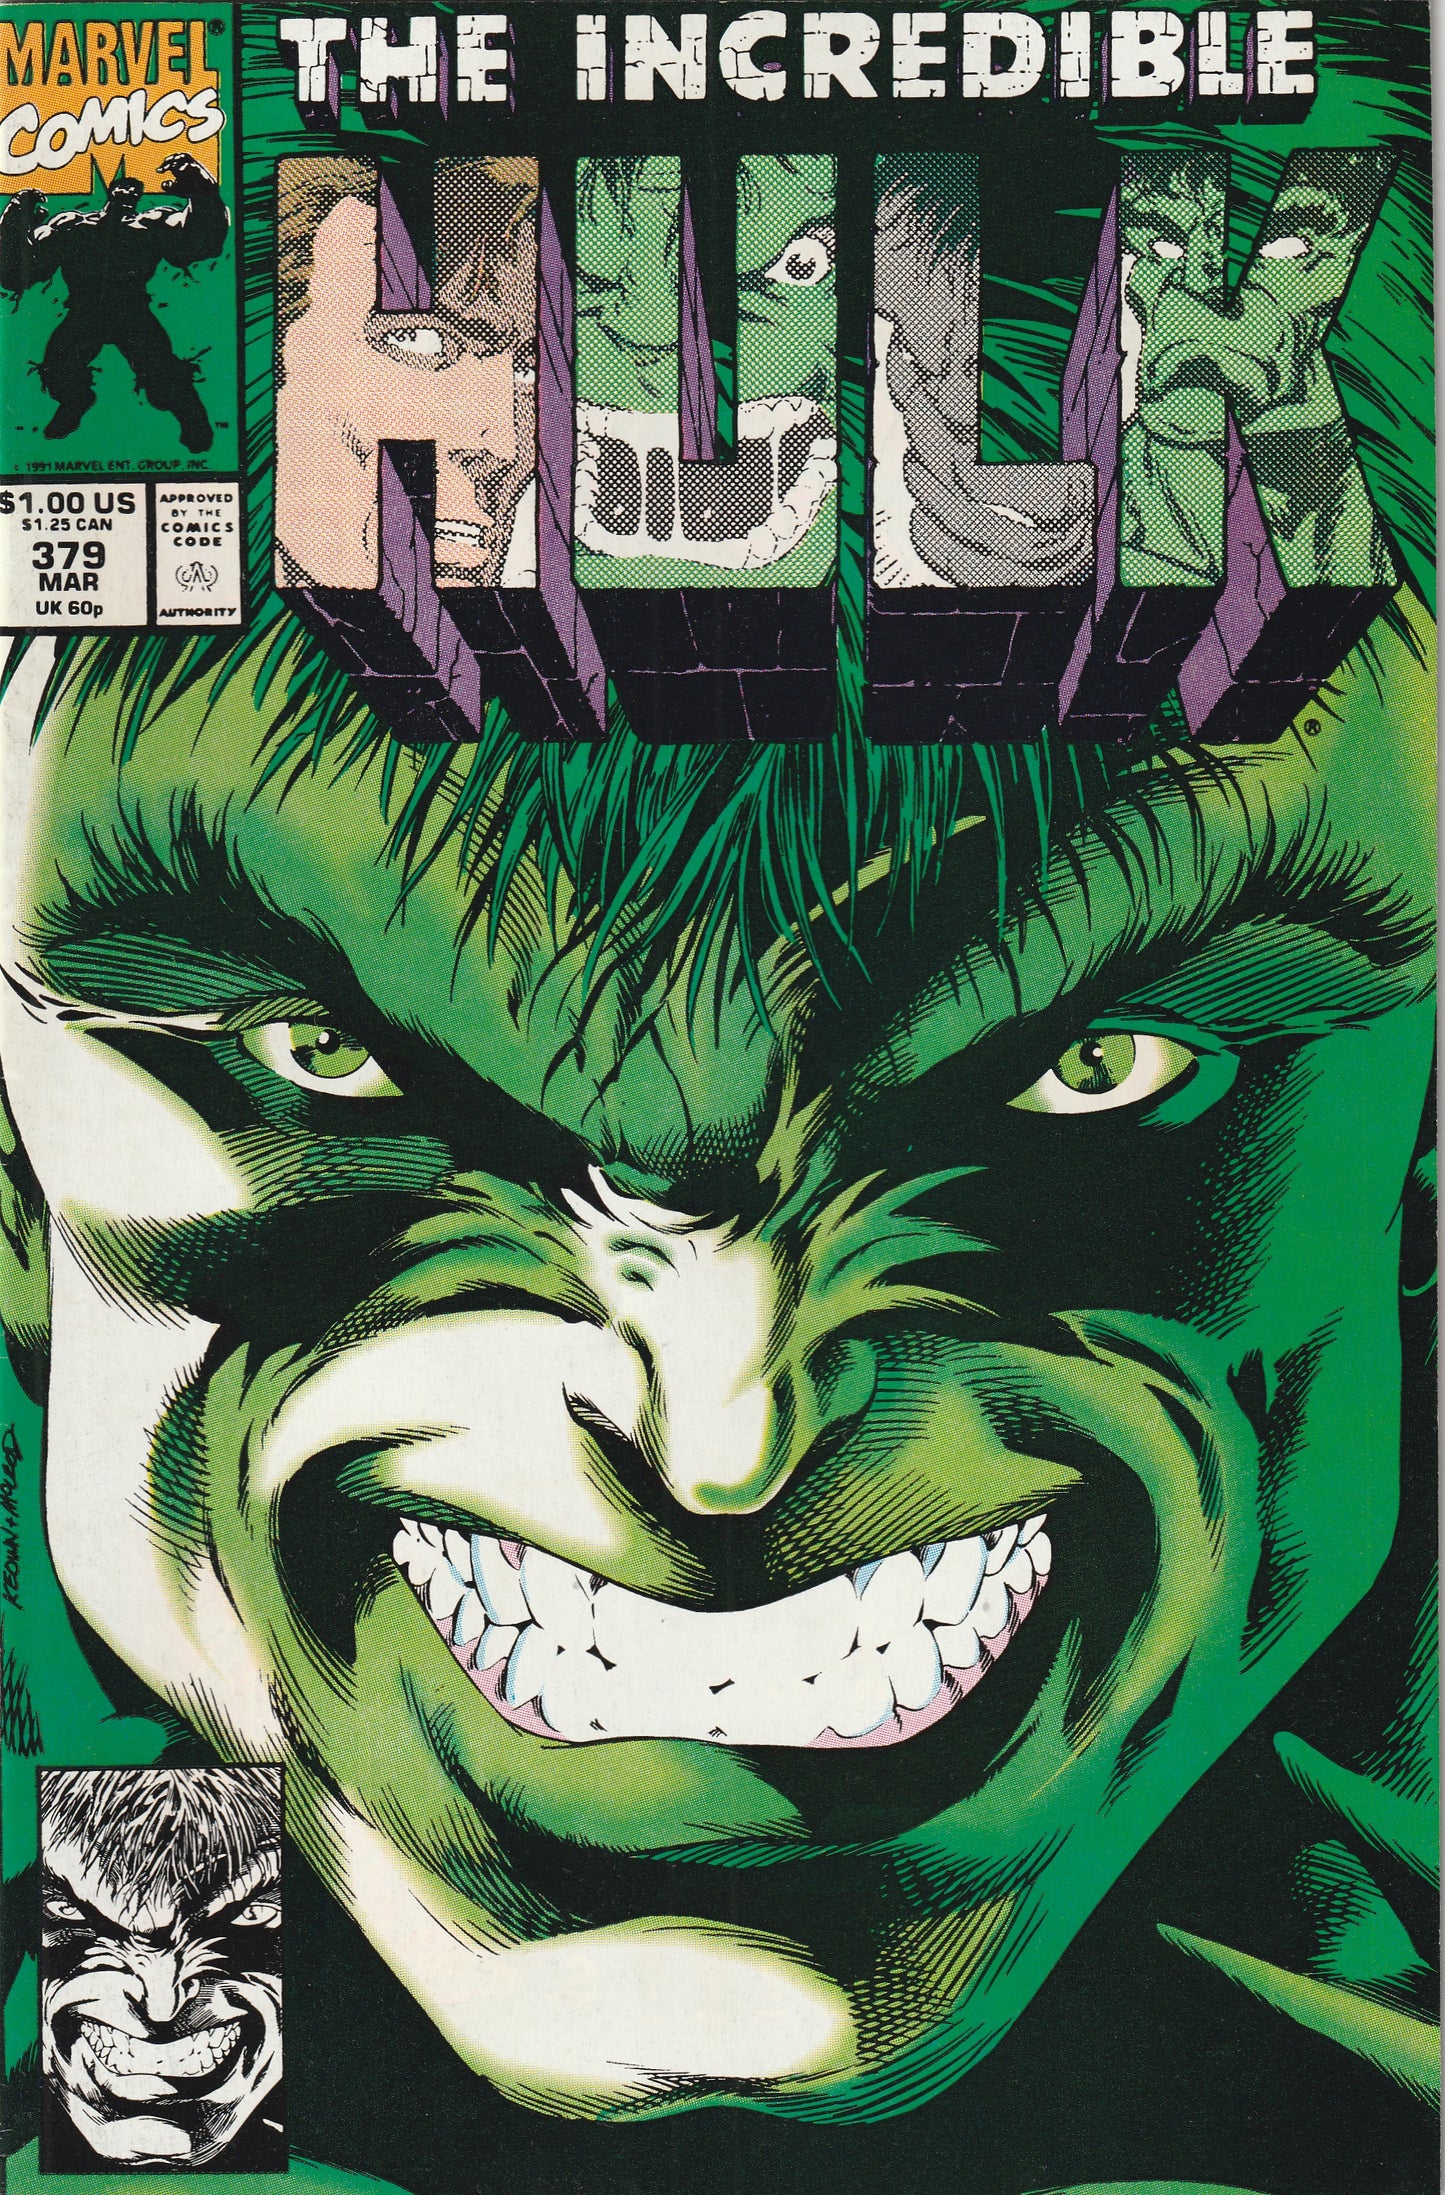 Incredible Hulk #379 (1991)